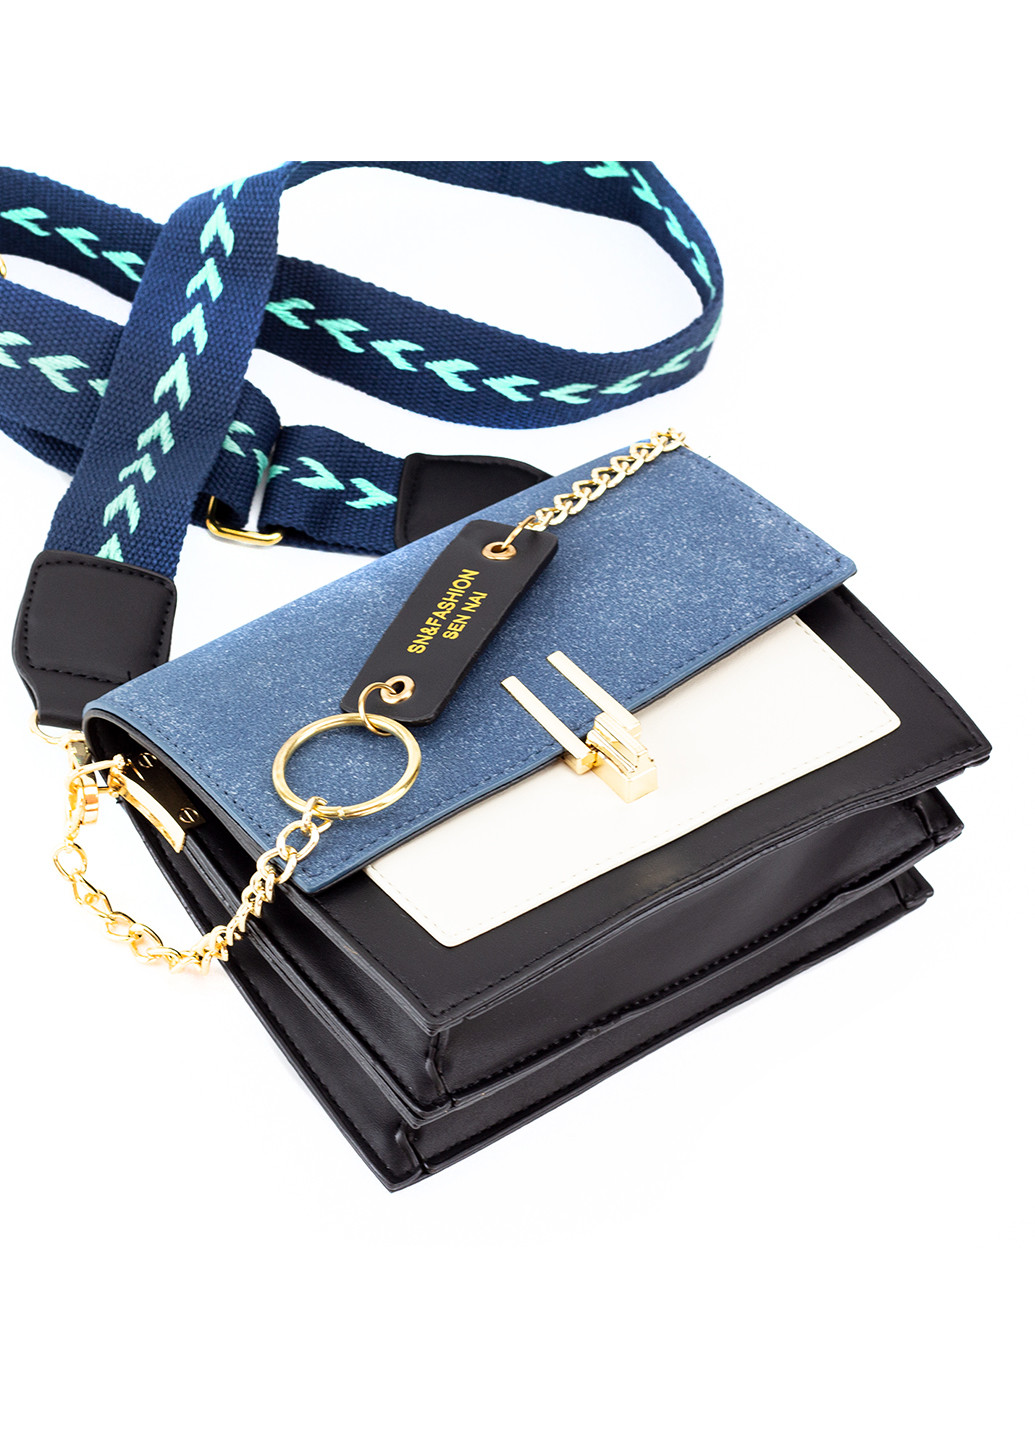 Женская небольшая сумка, синяя Corze ab13008 (225538345)